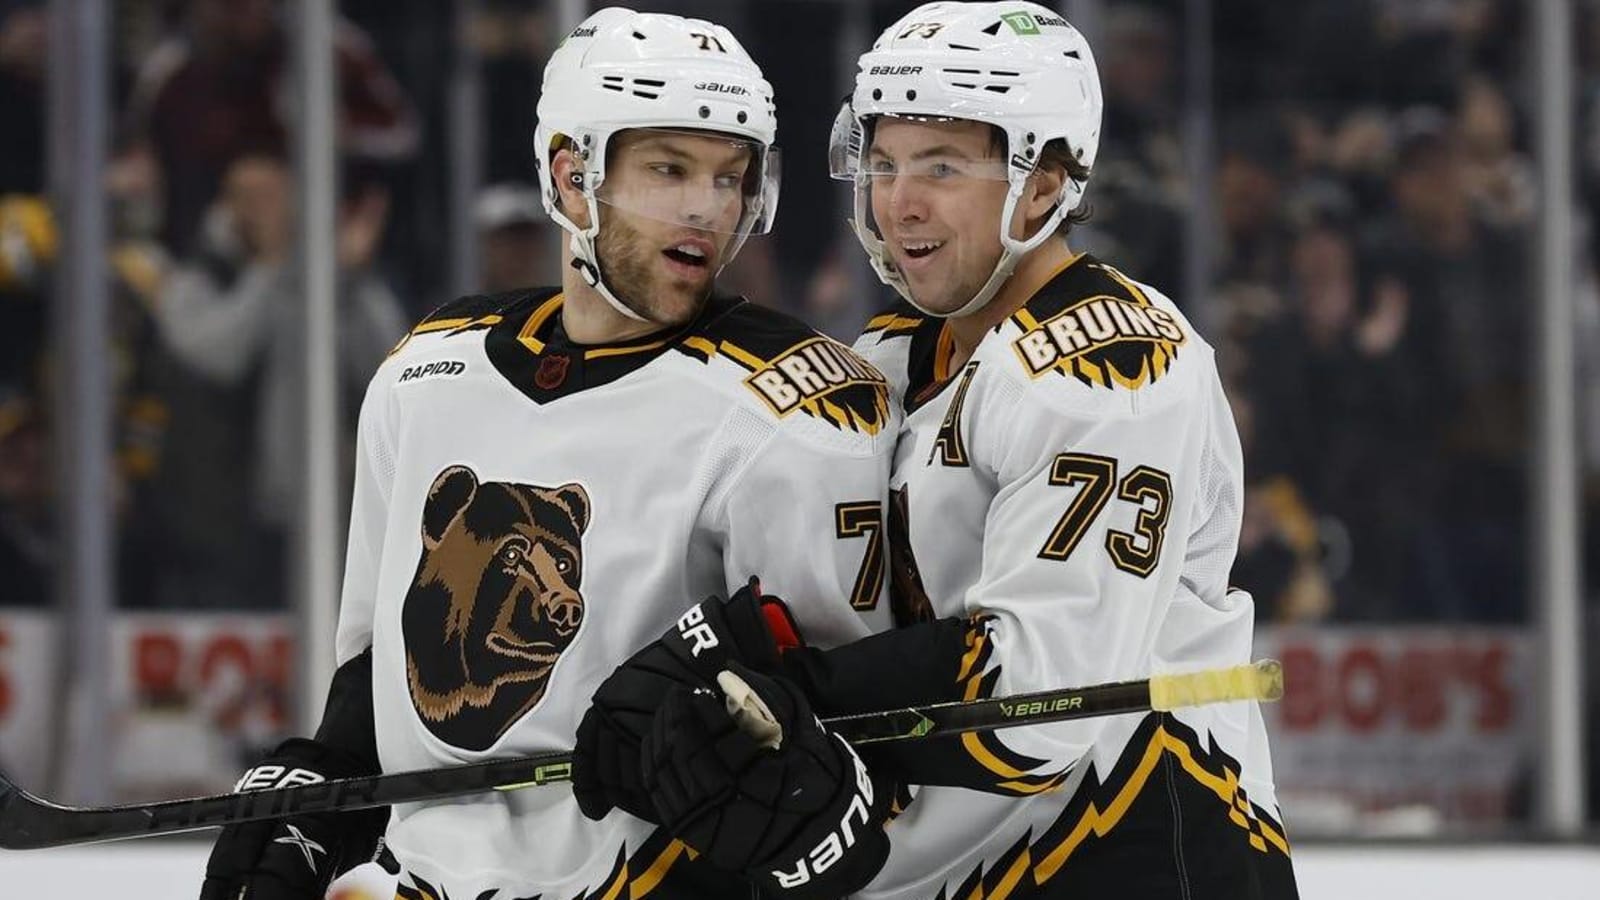 Surging Bruins bid to stay hot vs. Lightning